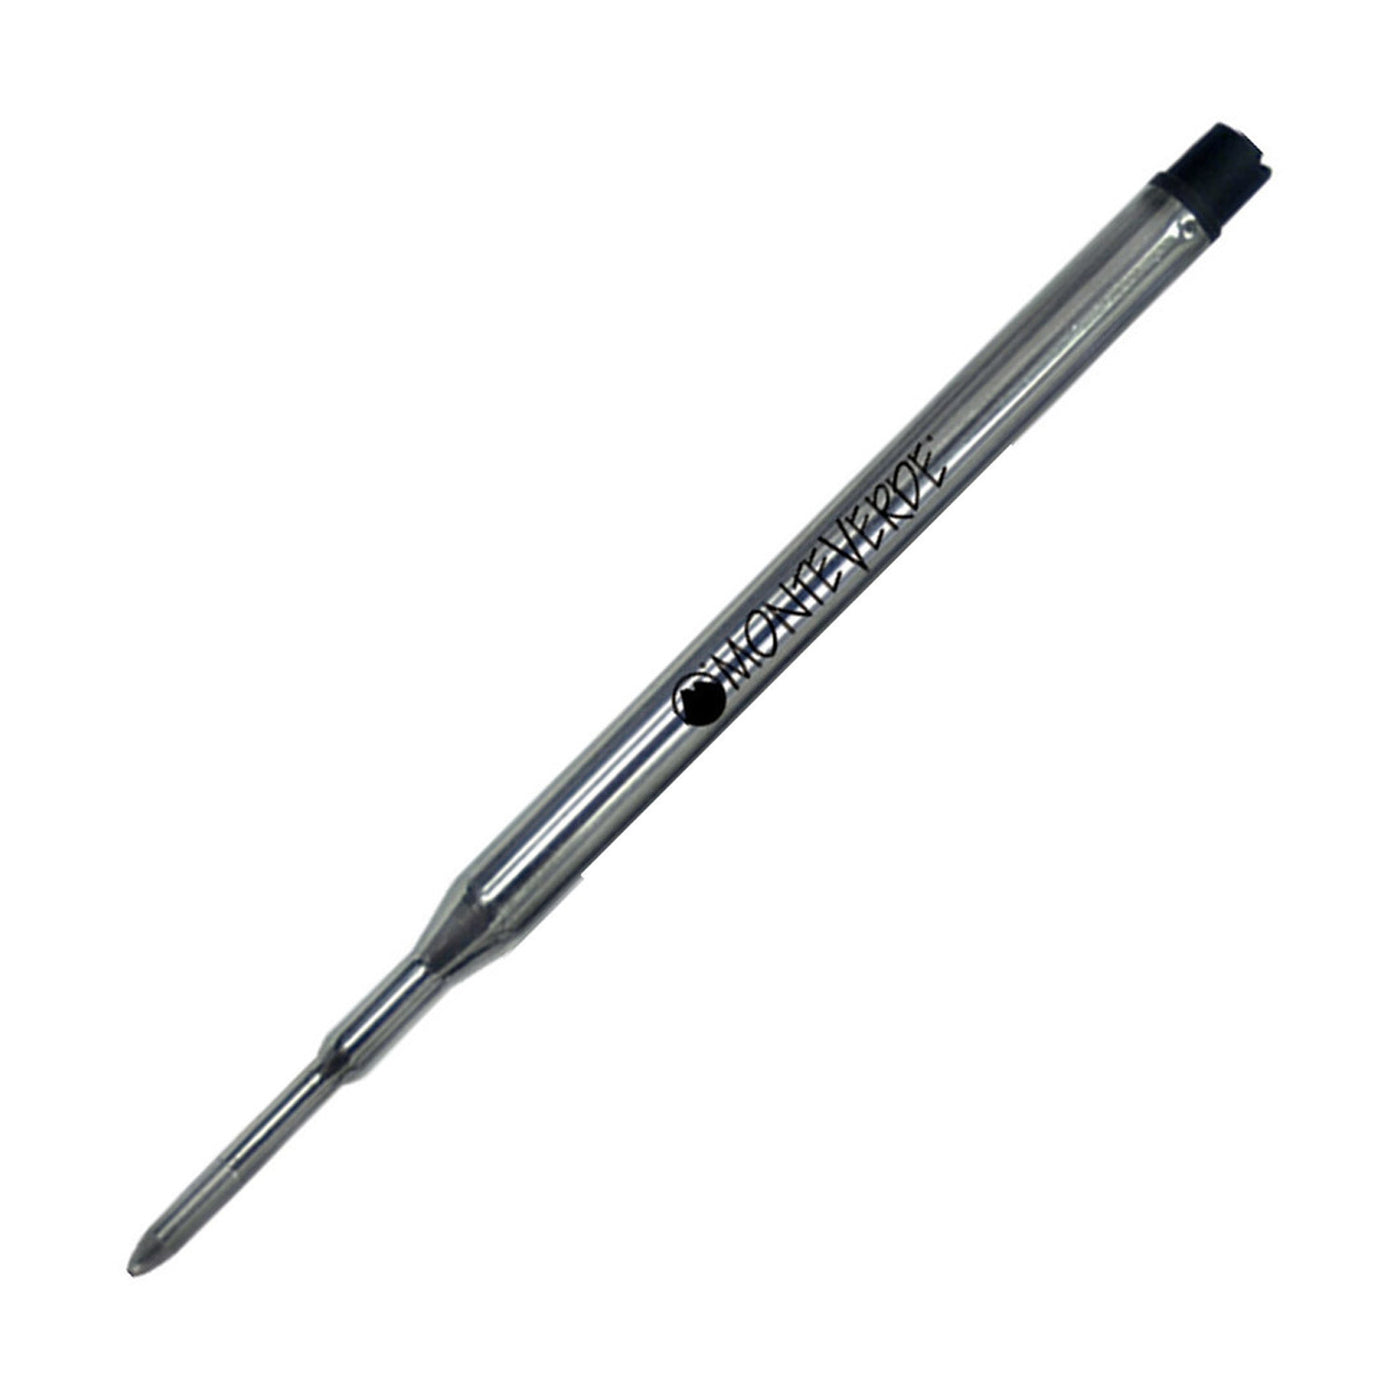 Monteverde Ball Pen Refill for Sheaffer - Medium - Green - Pack of 2 1